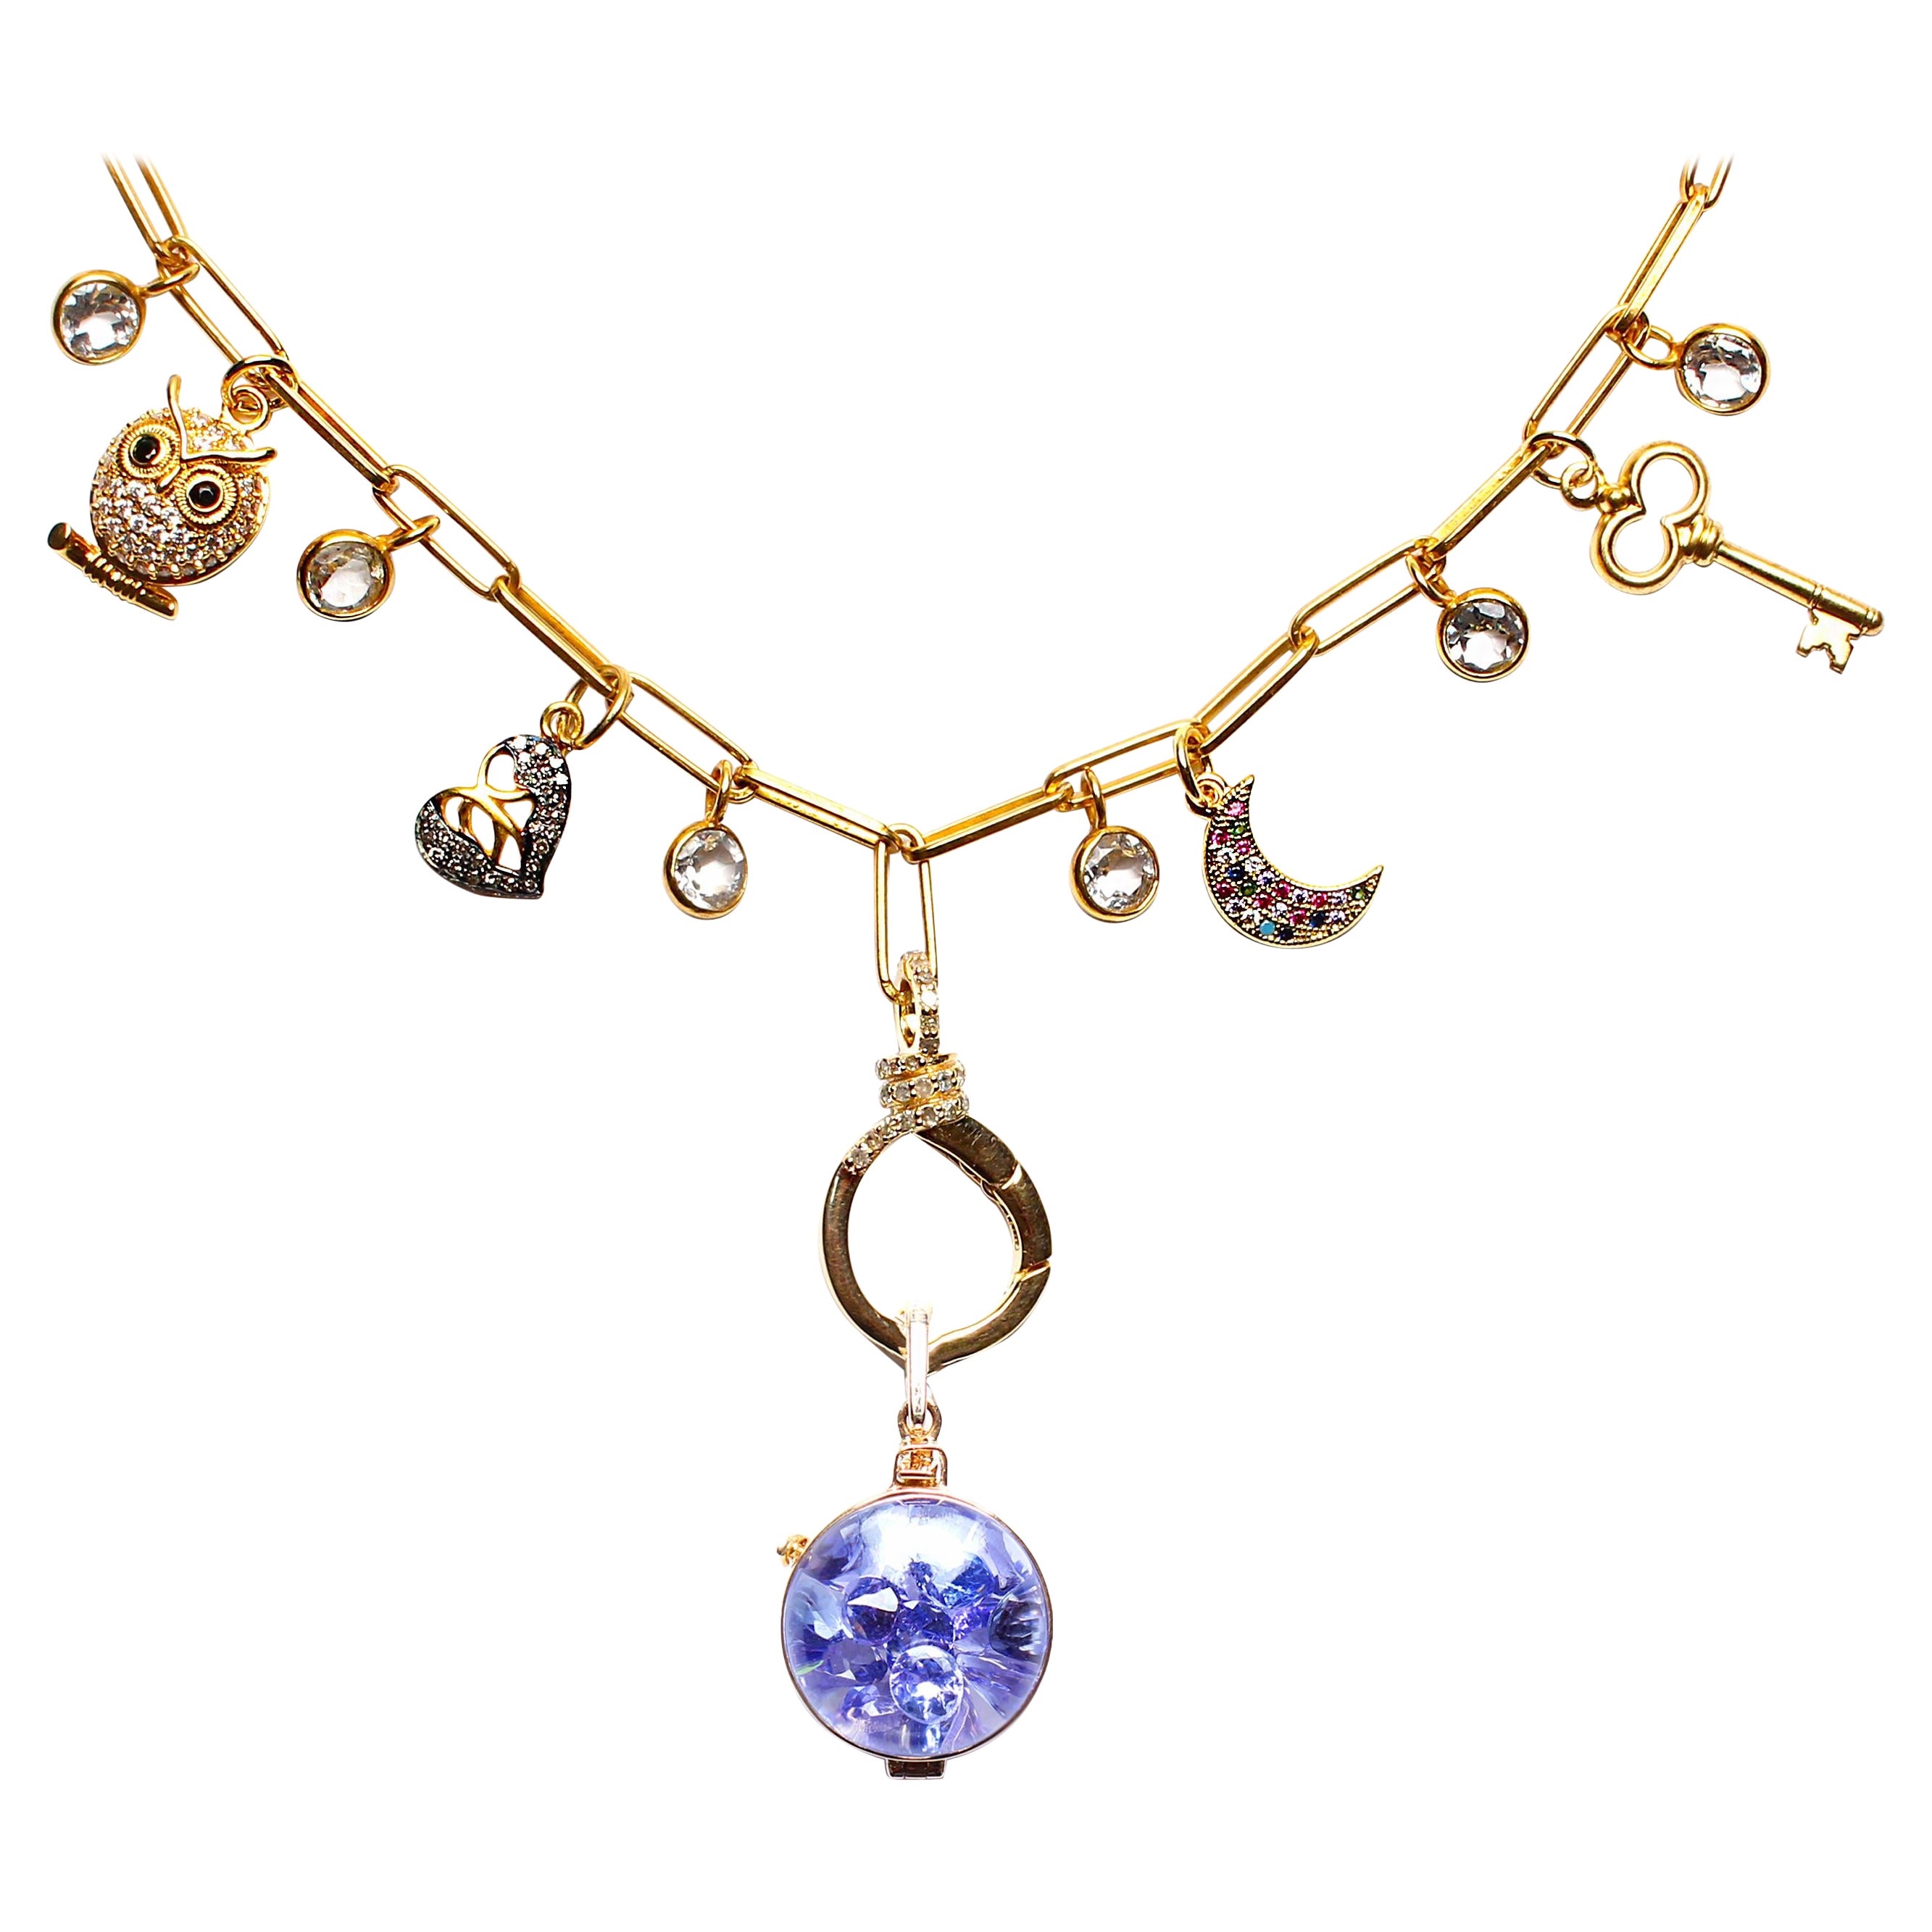 Clarissa Bronfman Signature Multi Charm Gold Ppr Clip Necklace & Tanzanite Charm